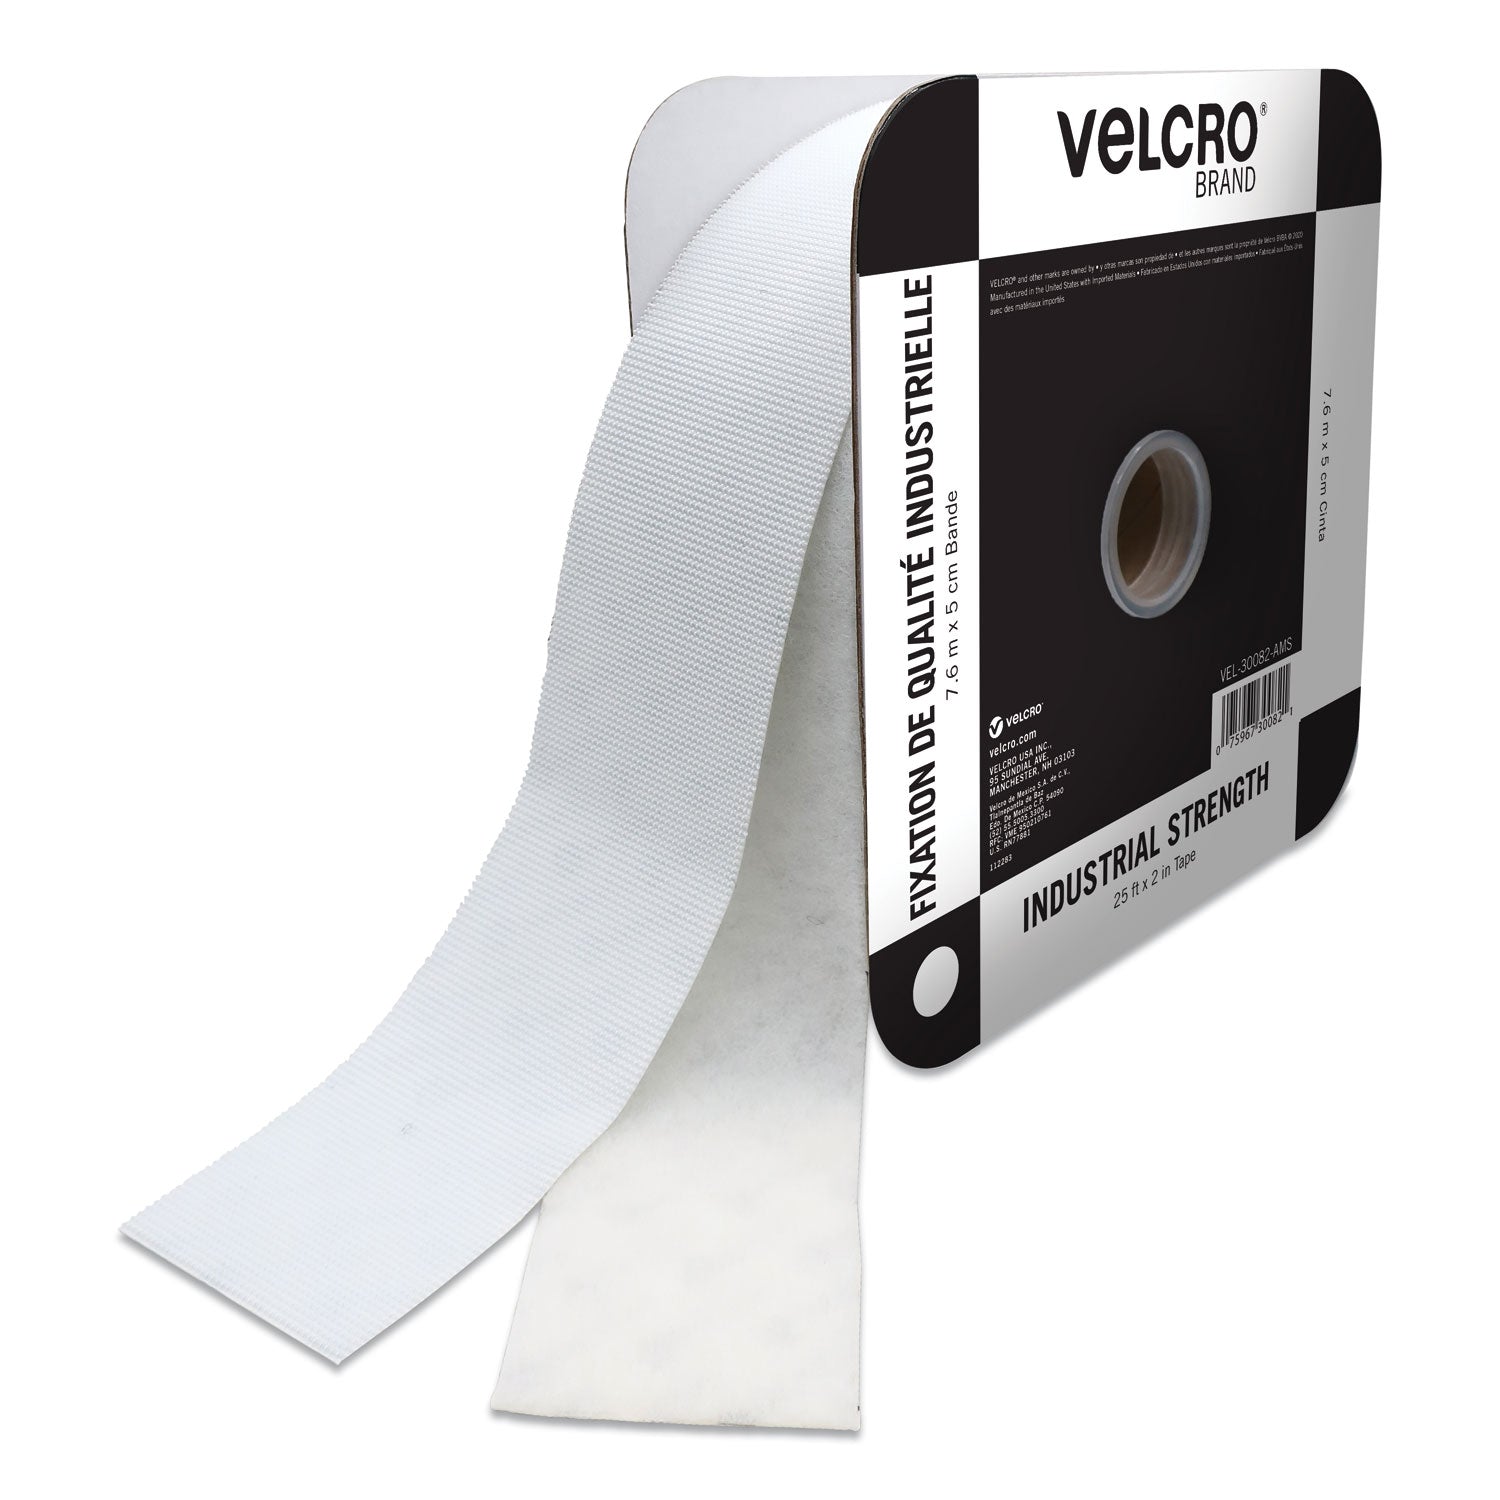 VELCRO Industrial Fastener Tape - 25 ft Length x 2" Width - 1 / Roll - White - 1